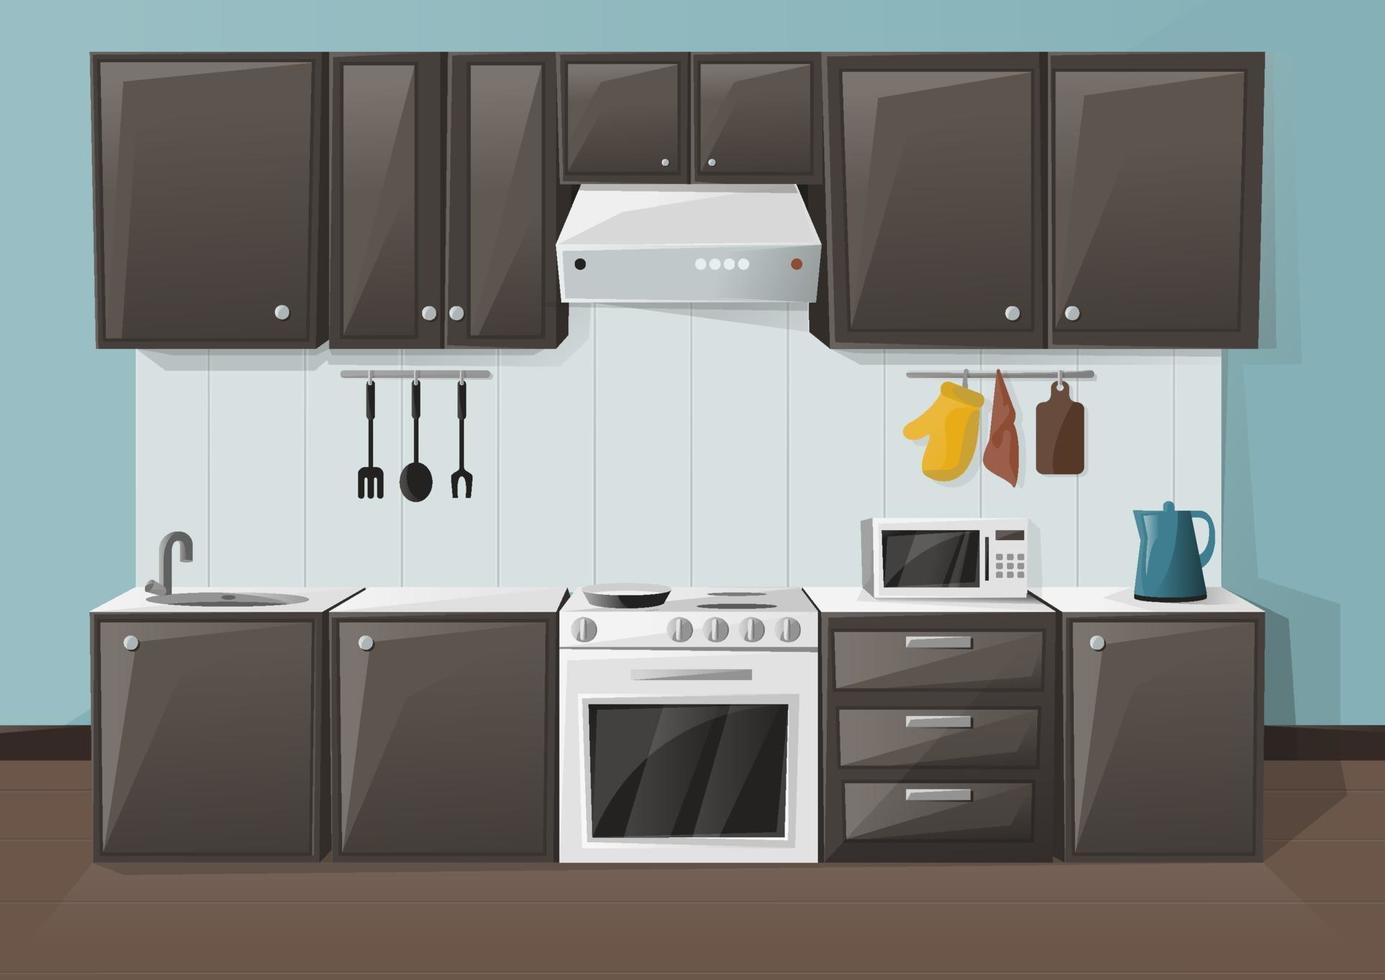 design d'intérieur de cuisine. chambre avec réfrigérateur, four, micro-ondes, évier et bouilloire. meubles de placard. illustration vectorielle vecteur